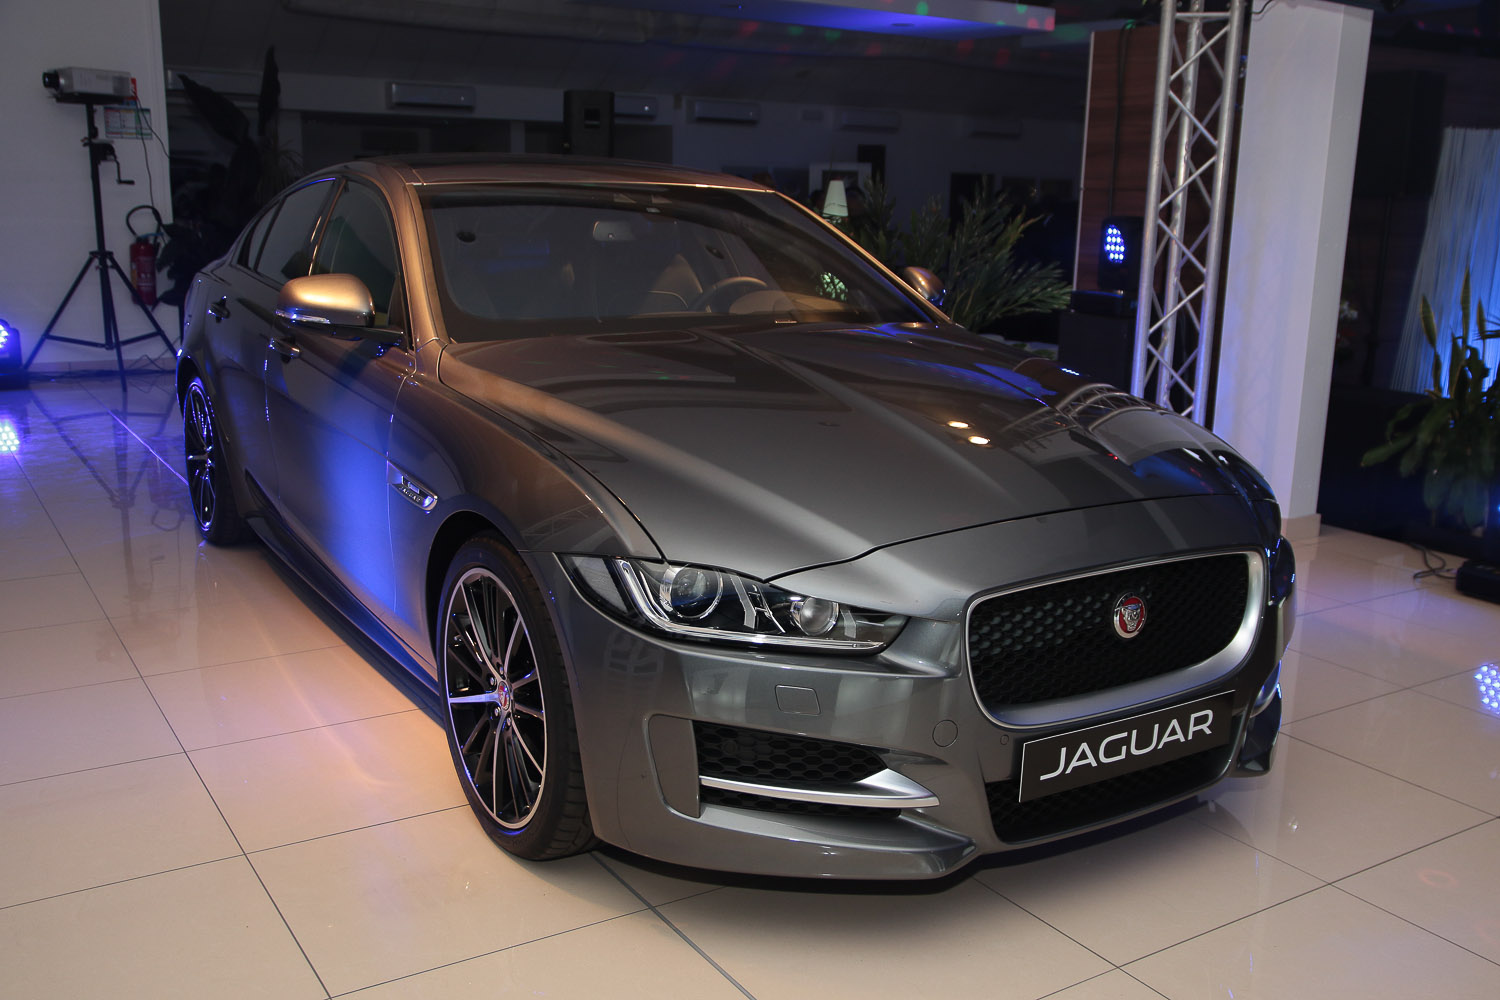 La Jaguar XE, que nous vous présenterons en détails prochainement dans la rubrique Auto